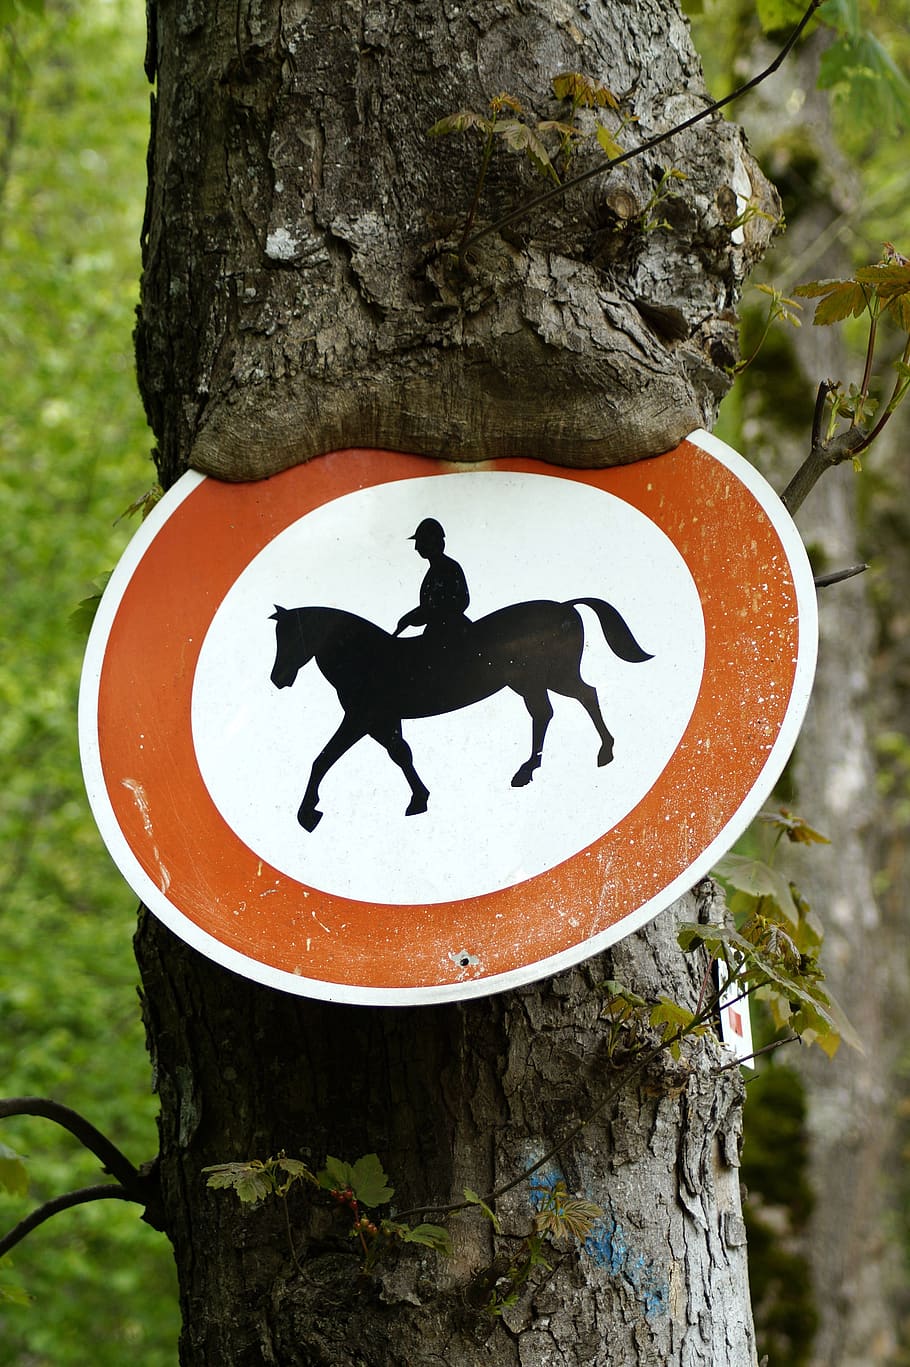 equitación prohibida, árbol, escudo, caballos prohibidos, paseo, prohibido, caballo, señal de tráfico, signo, símbolo